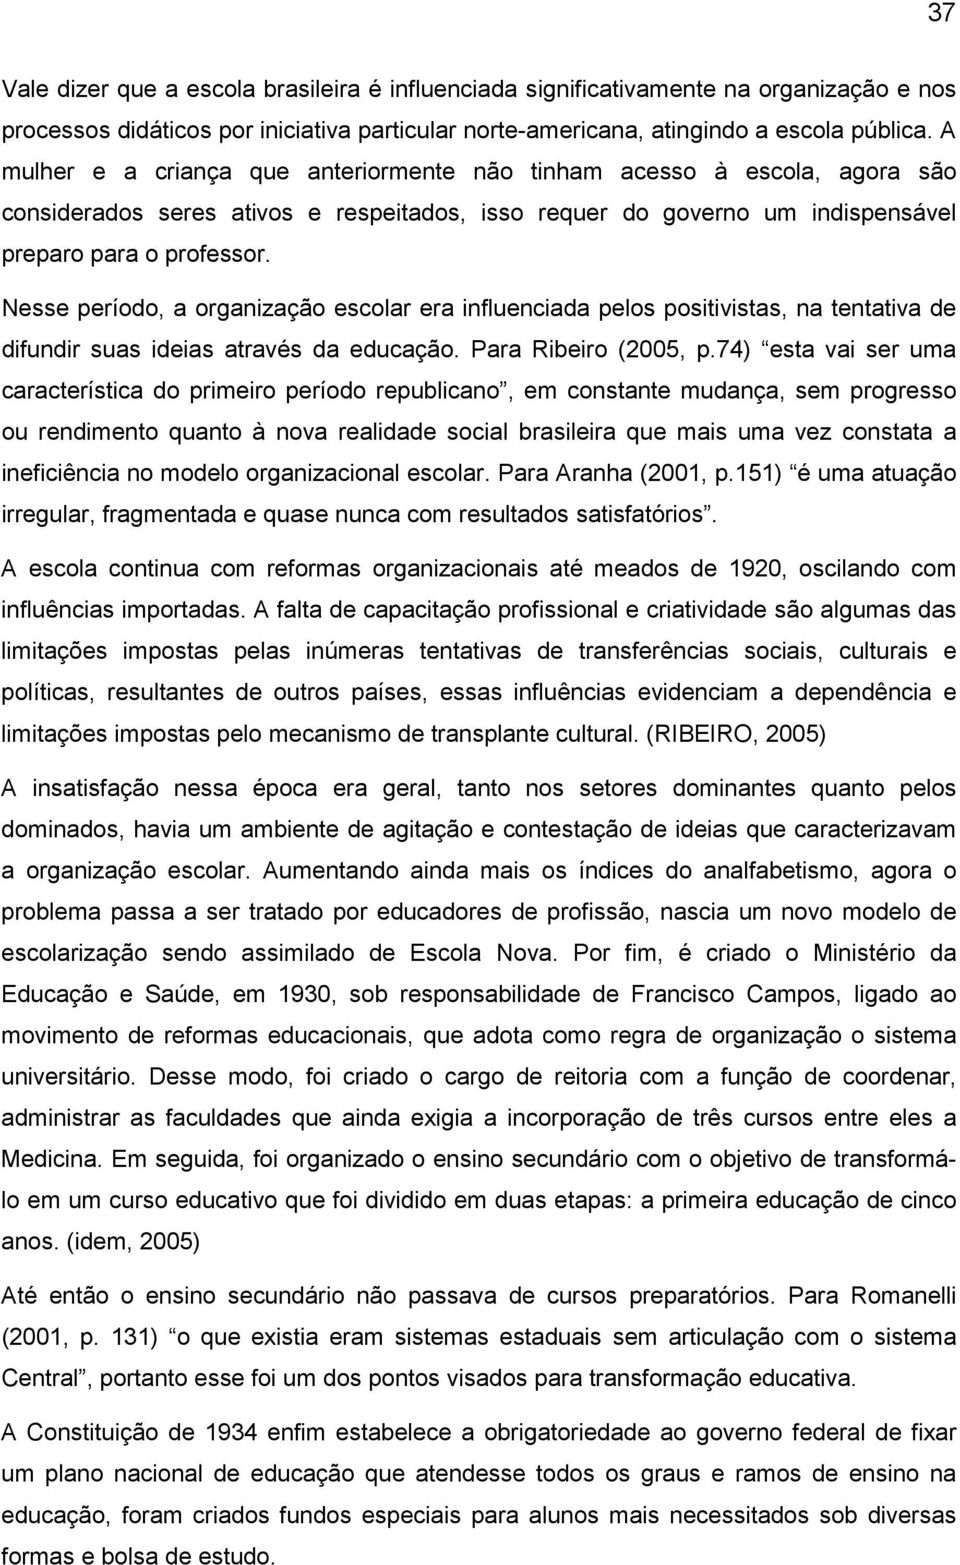 Nesse período, a organização escolar era influenciada pelos positivistas, na tentativa de difundir suas ideias através da educação. Para Ribeiro (2005, p.